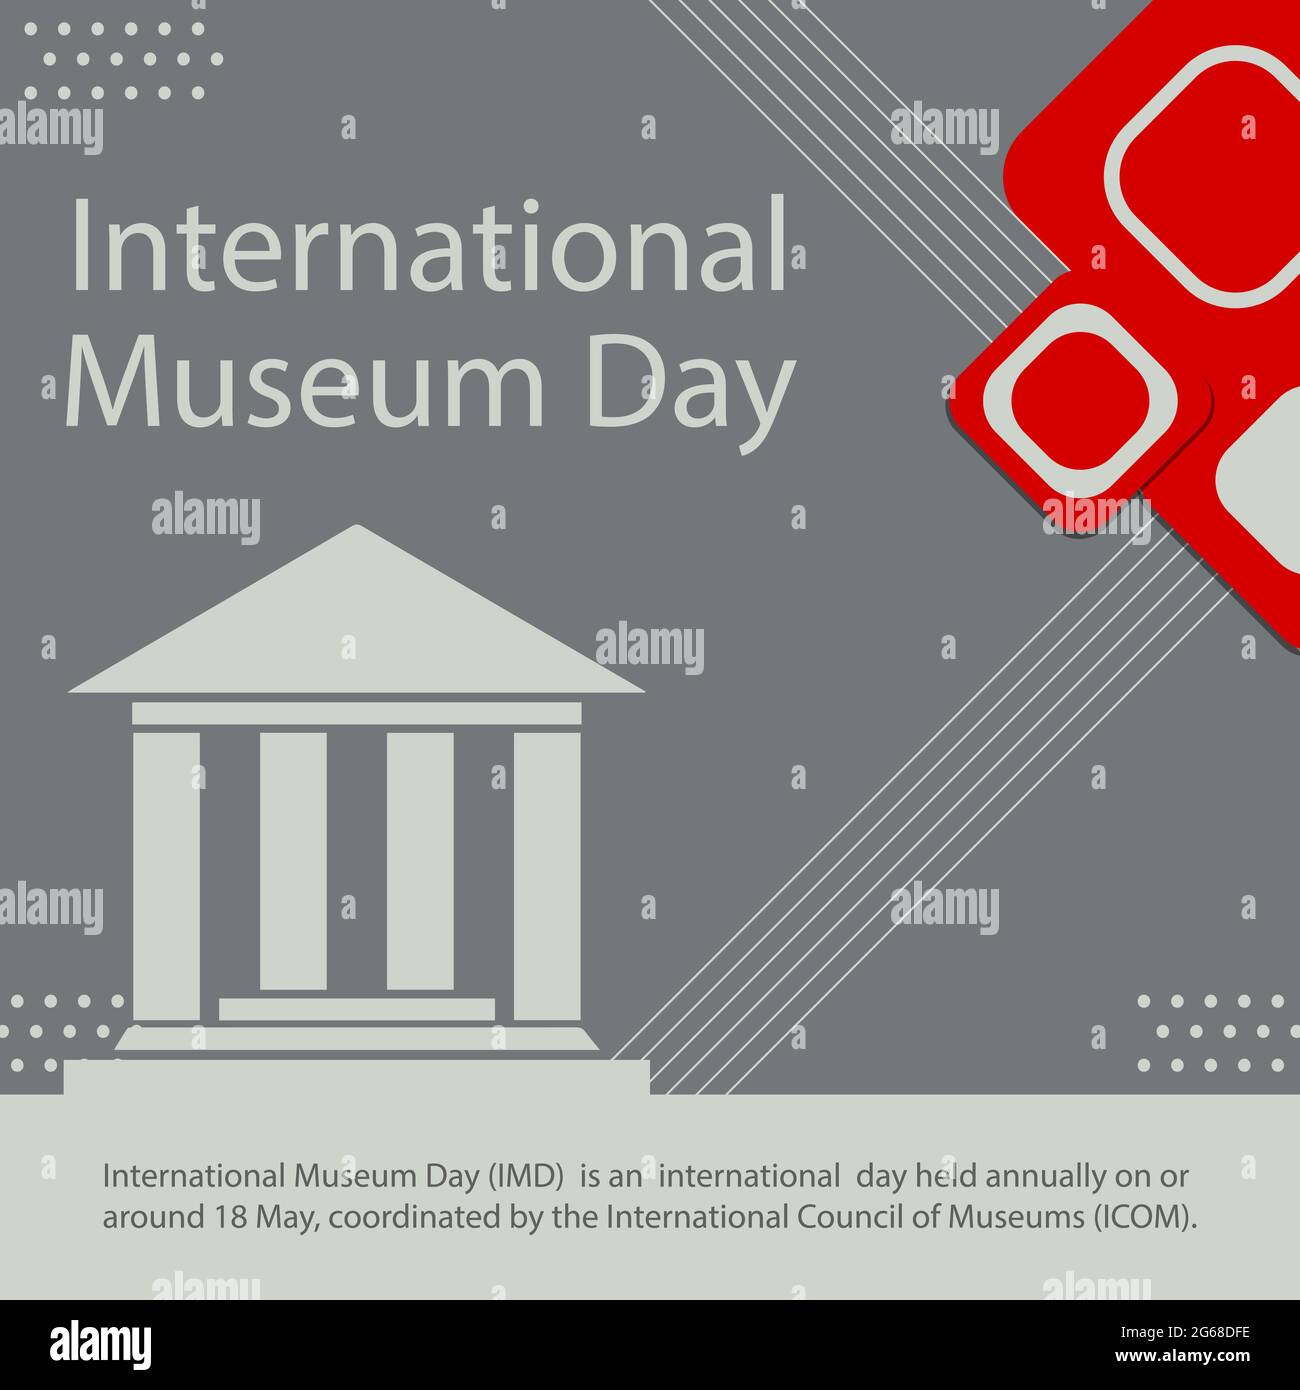 Der Internationale Museumstag (IMD) ist ein internationaler Tag, der jährlich am oder um den 18. Mai stattfindet und vom Internationalen Museumsrat (ICOM) koordiniert wird. Stock Vektor